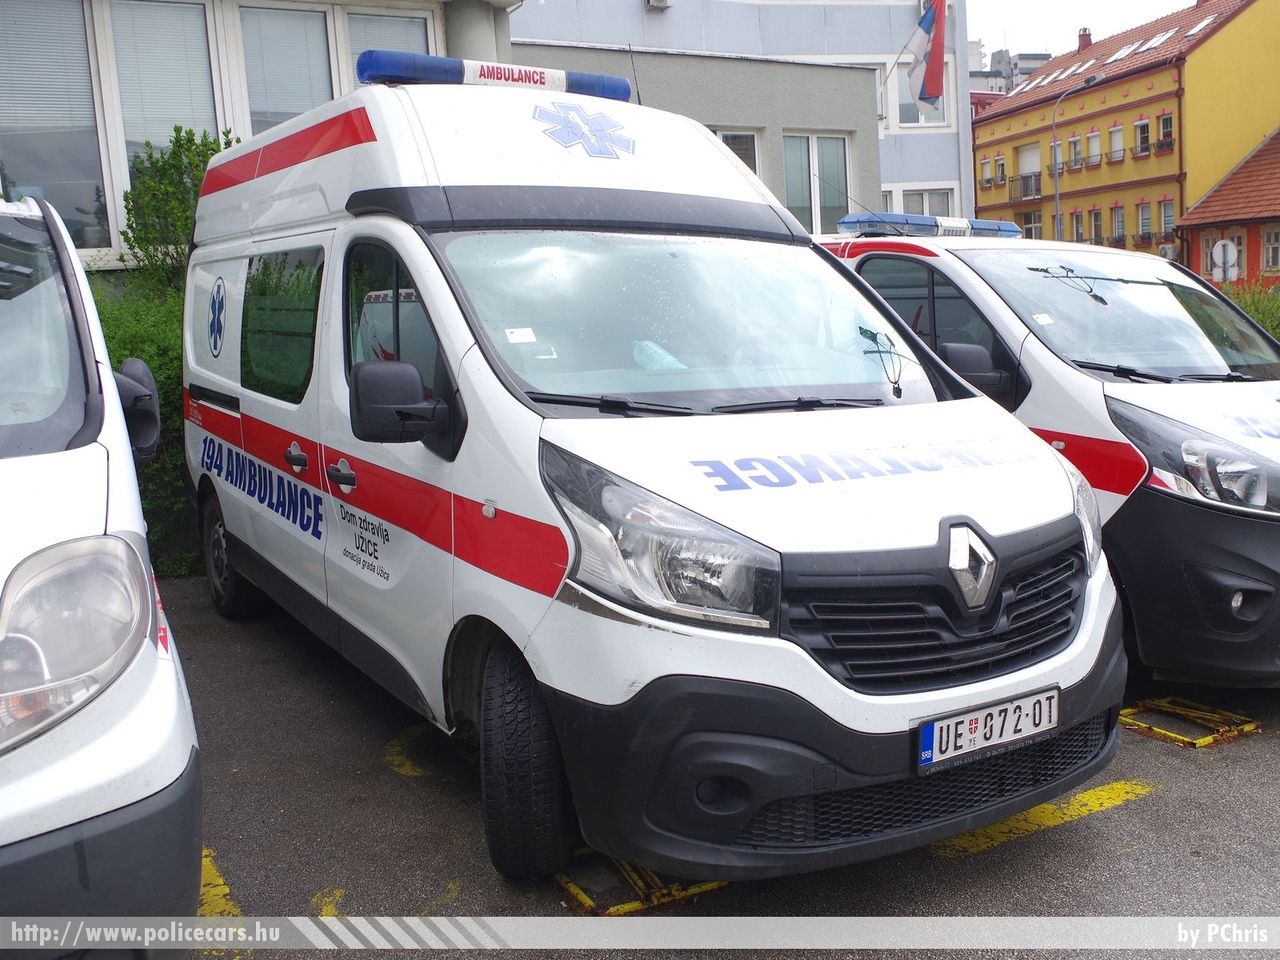 Renault Trafic, fotó: PChris
Keywords: szerb Szerbia mentő mentőautó Serbia serbian ambulance